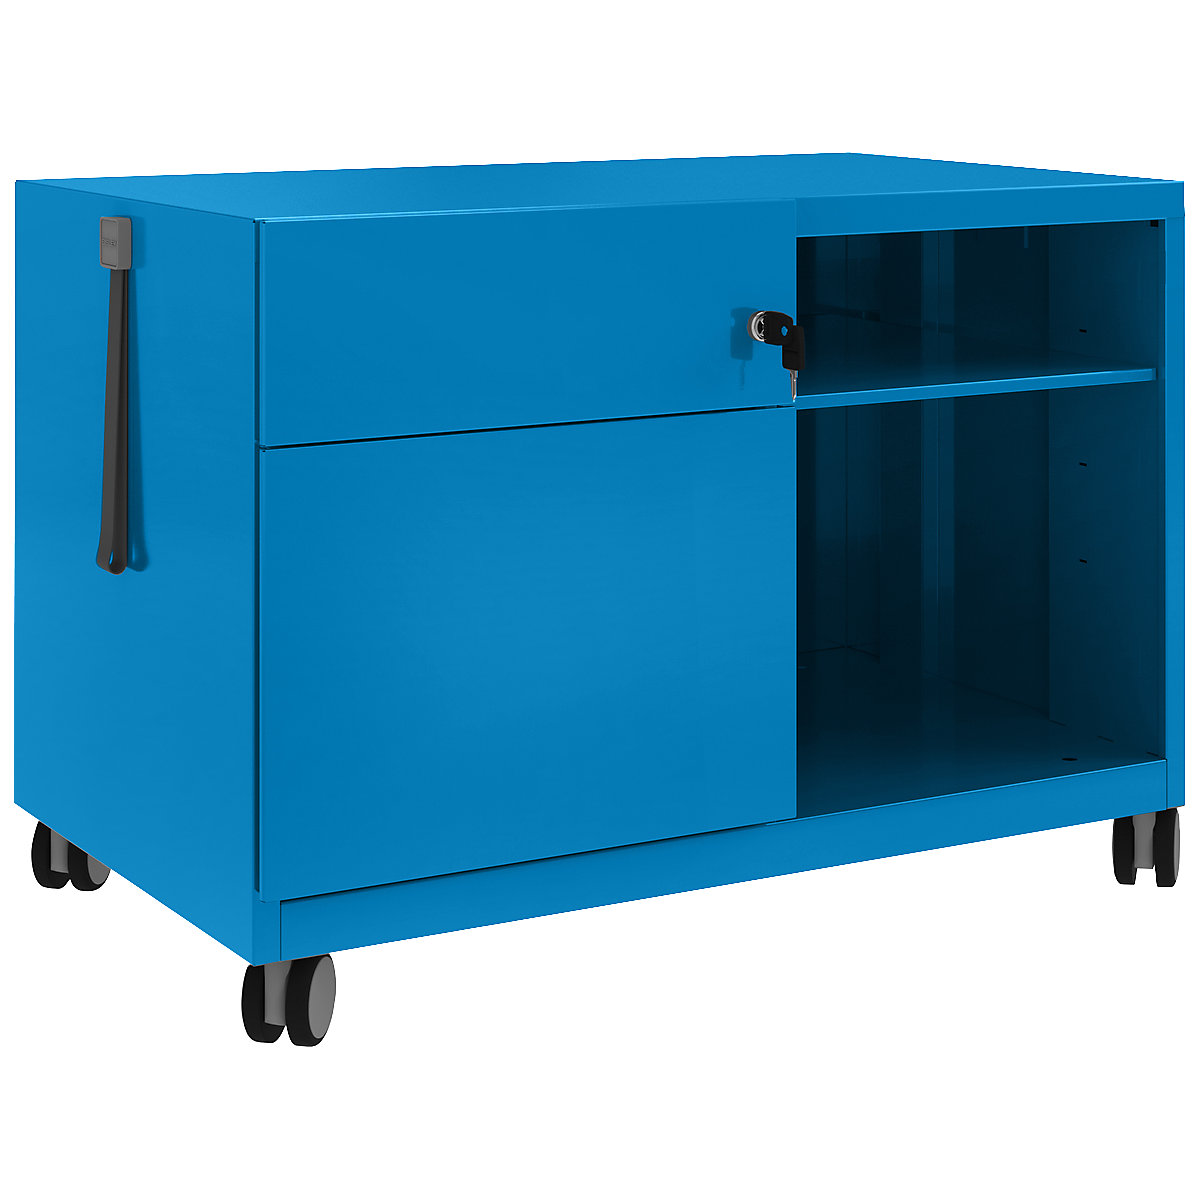 Note™ CADDY, VxŠxD 563 x 800 x 490 mm – BISLEY, lijevo 1 univerzalna ladica i ladica za vješanje registratora, u plavoj boji-6